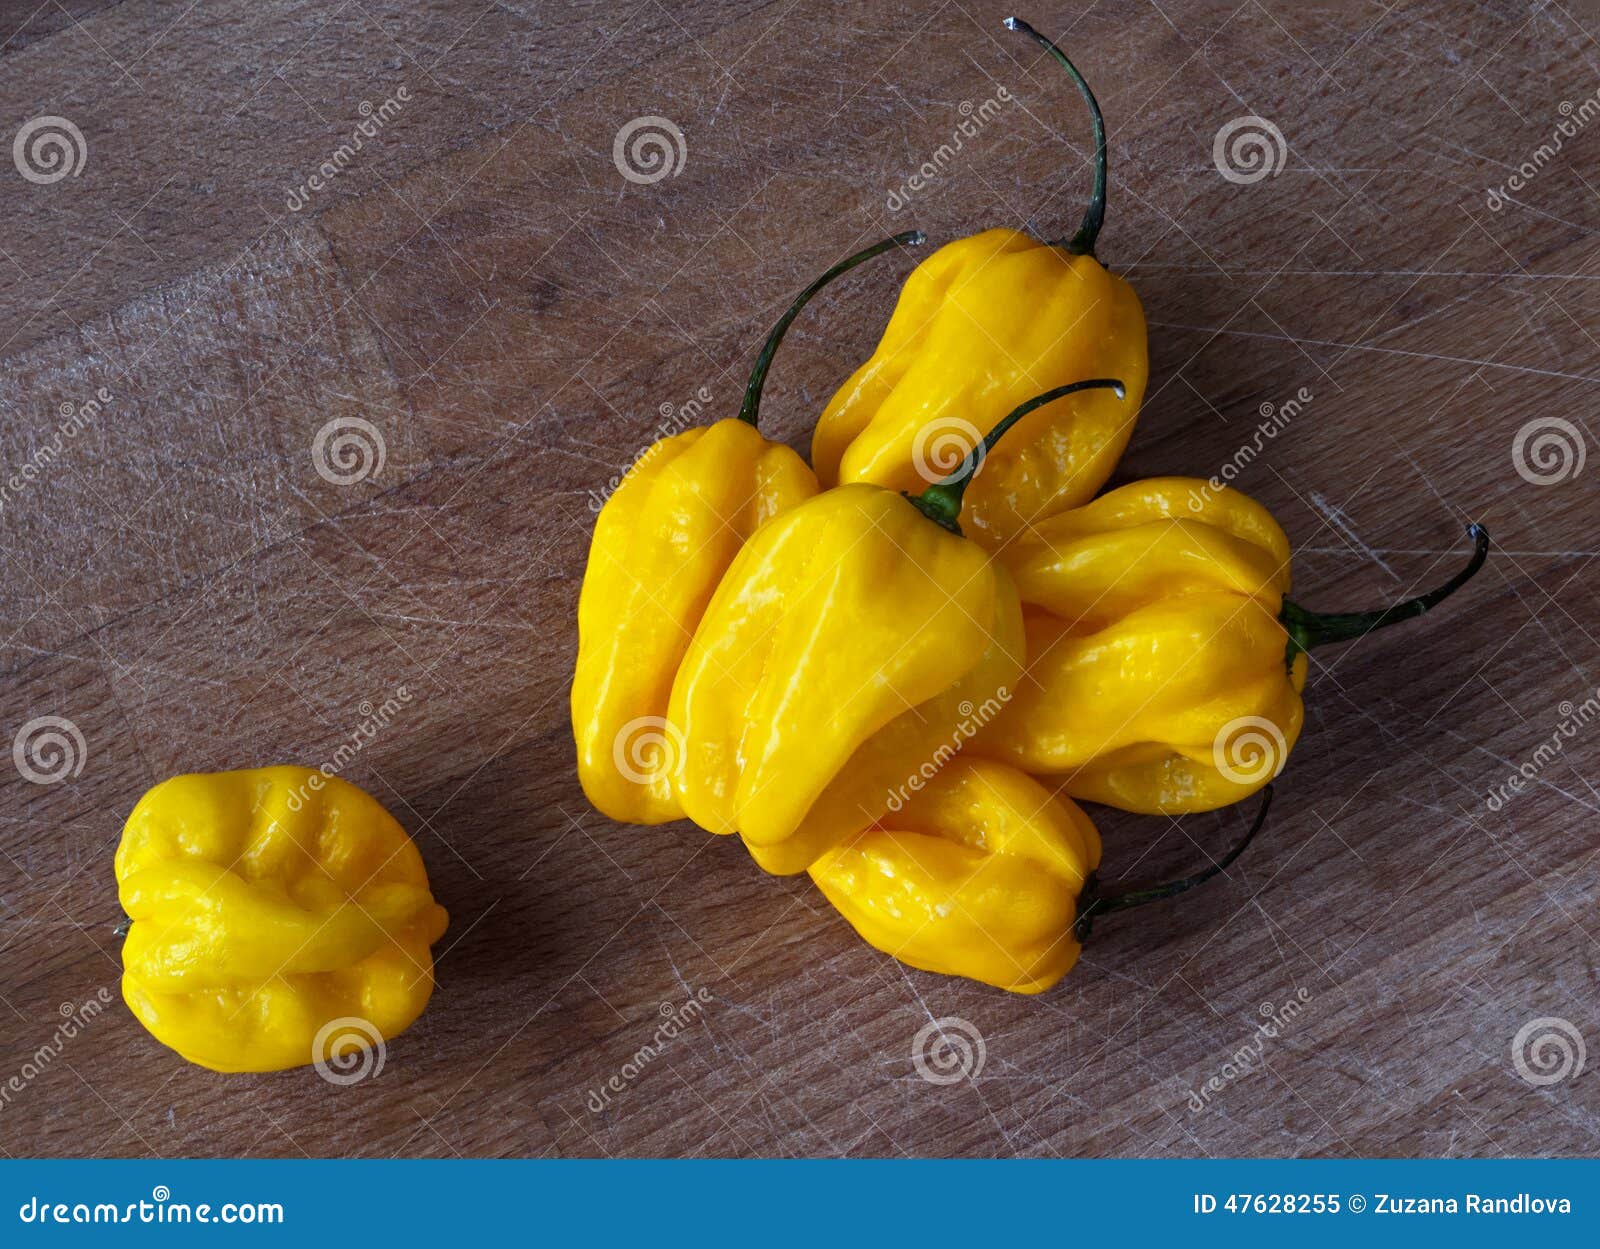 yellow habanero peppers